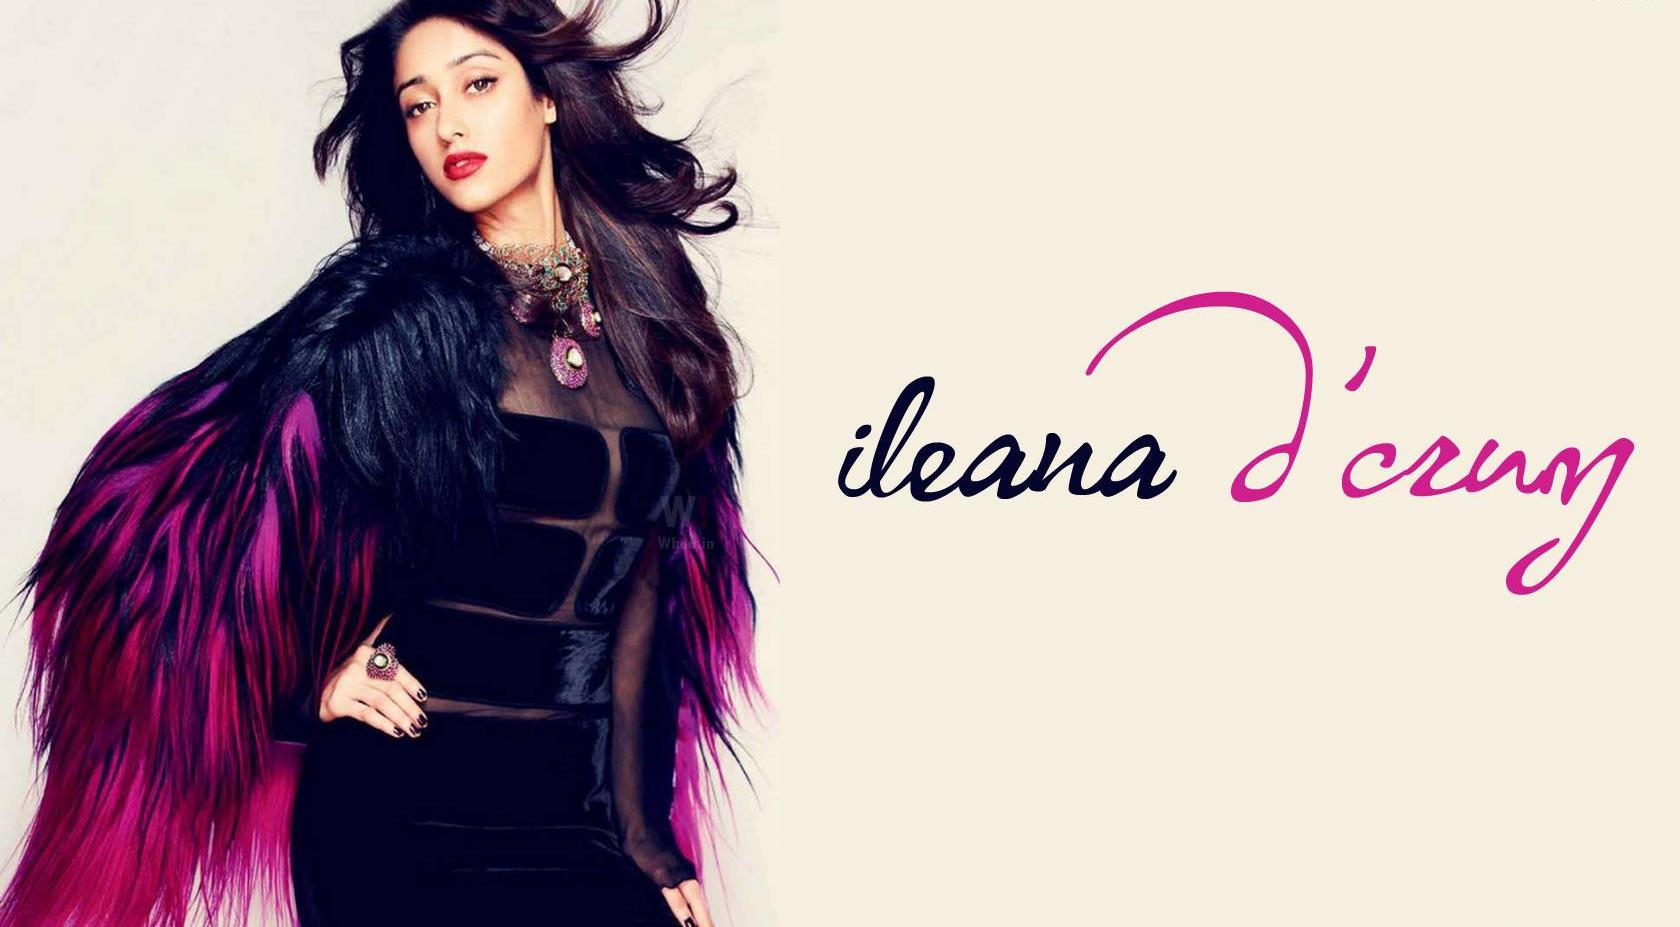 Ileana Dcruz In Black Angel Dress Hd Wallpaper - Ileana Modern - HD Wallpaper 